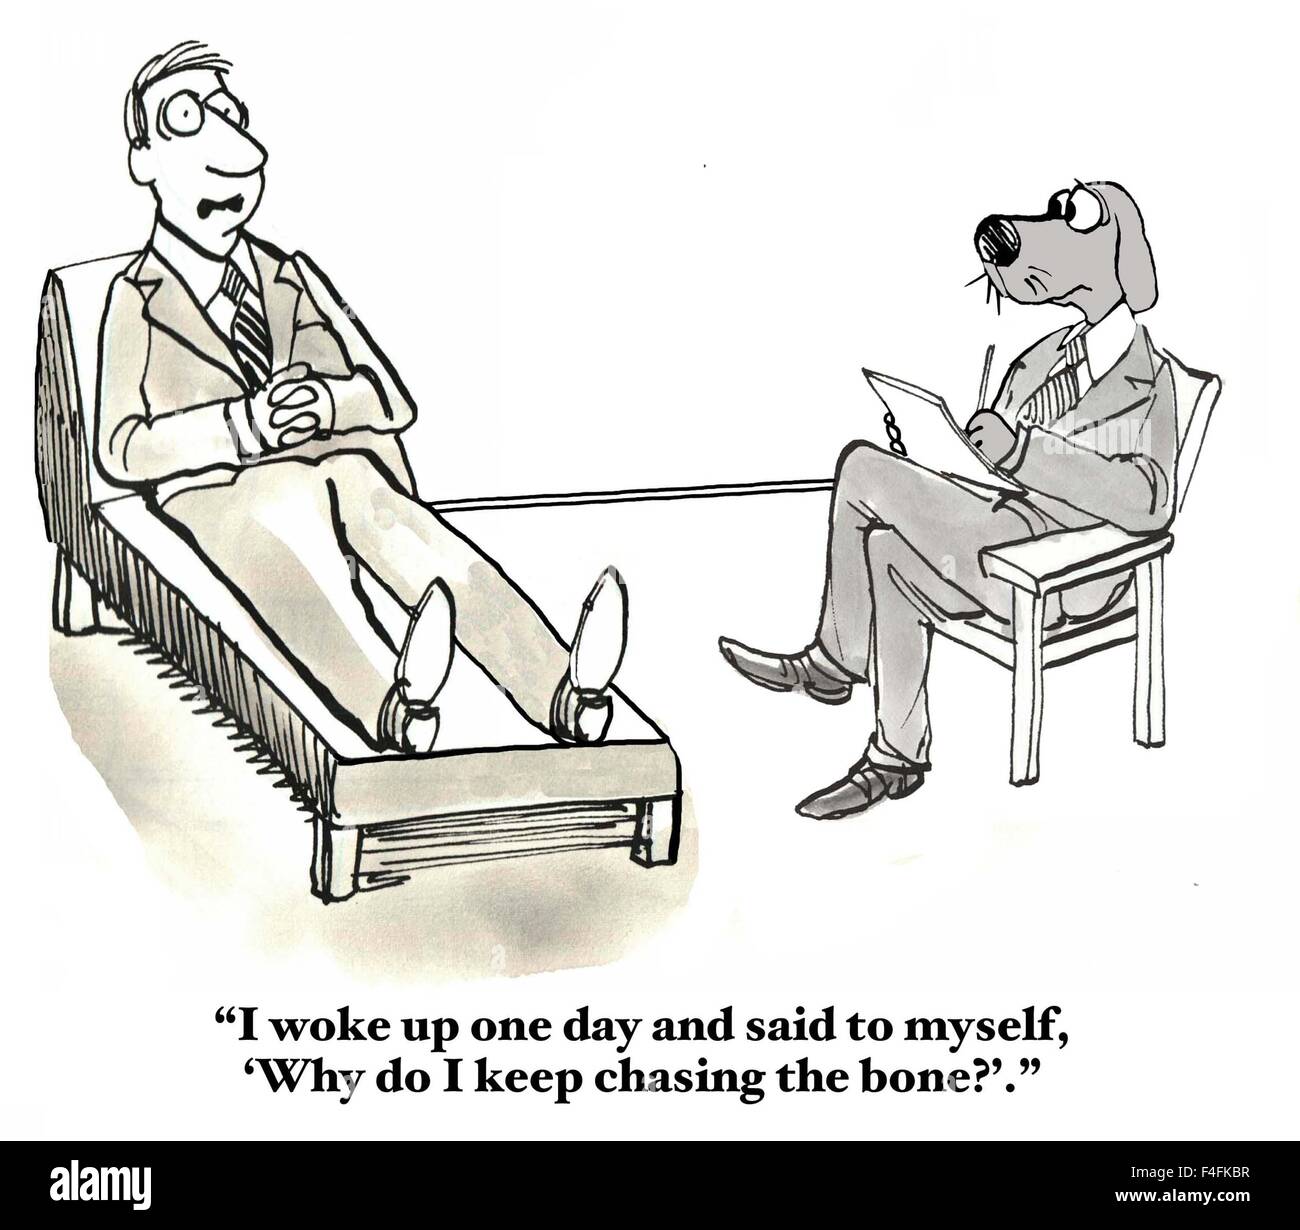 Geschäft, medizinischen und juristischen Cartoon von Mensch zu Hund Therapeuten sprechen und sagen: "I woke up..."warum ich die Knochen jagen zu halten?"." Stockfoto